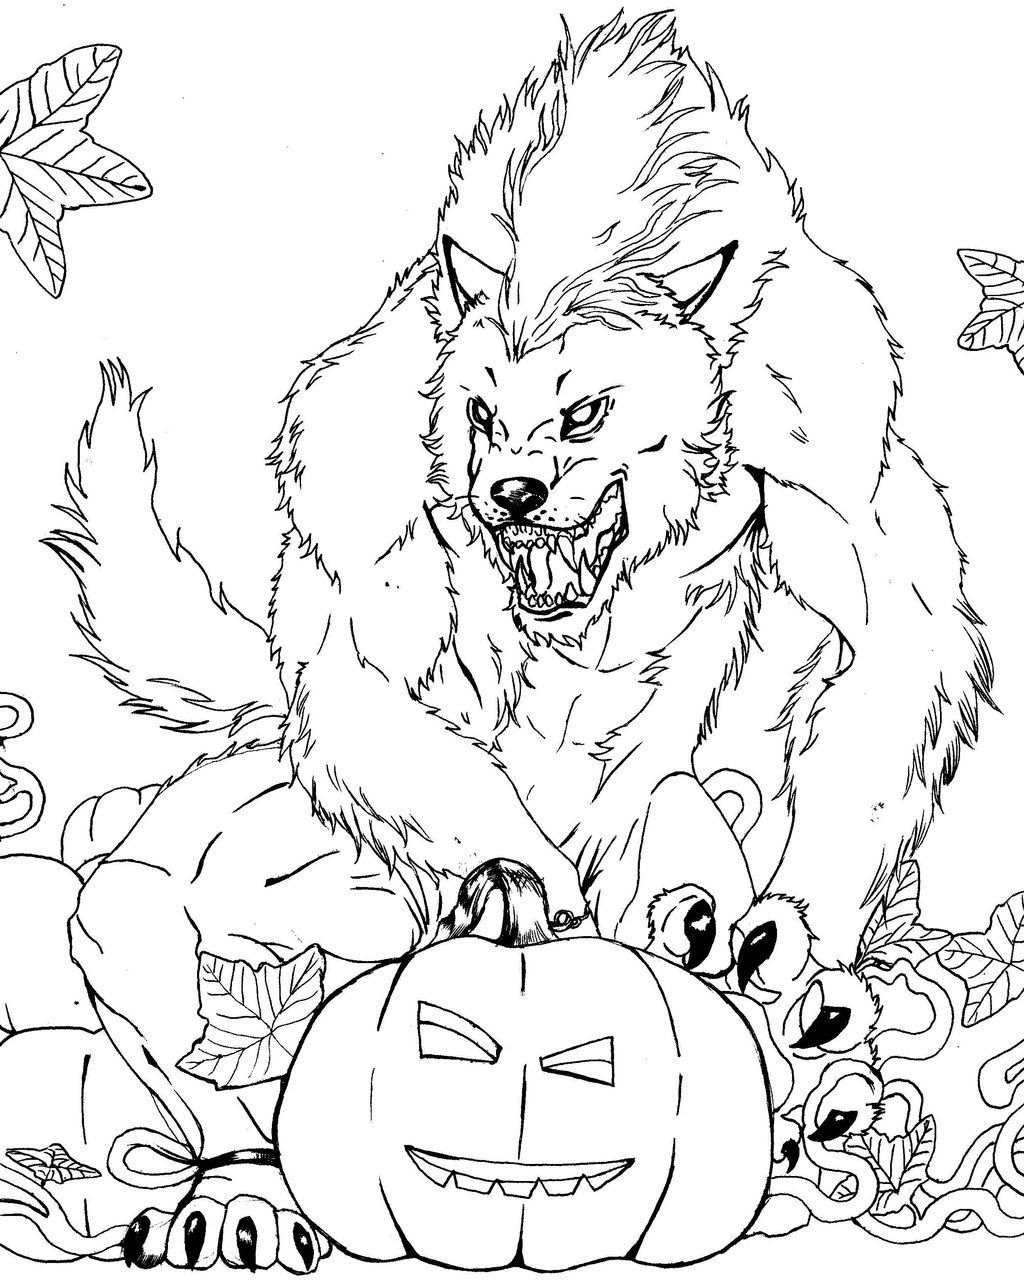 Pagina da colorare di lupo mannaro spaventoso di Halloween